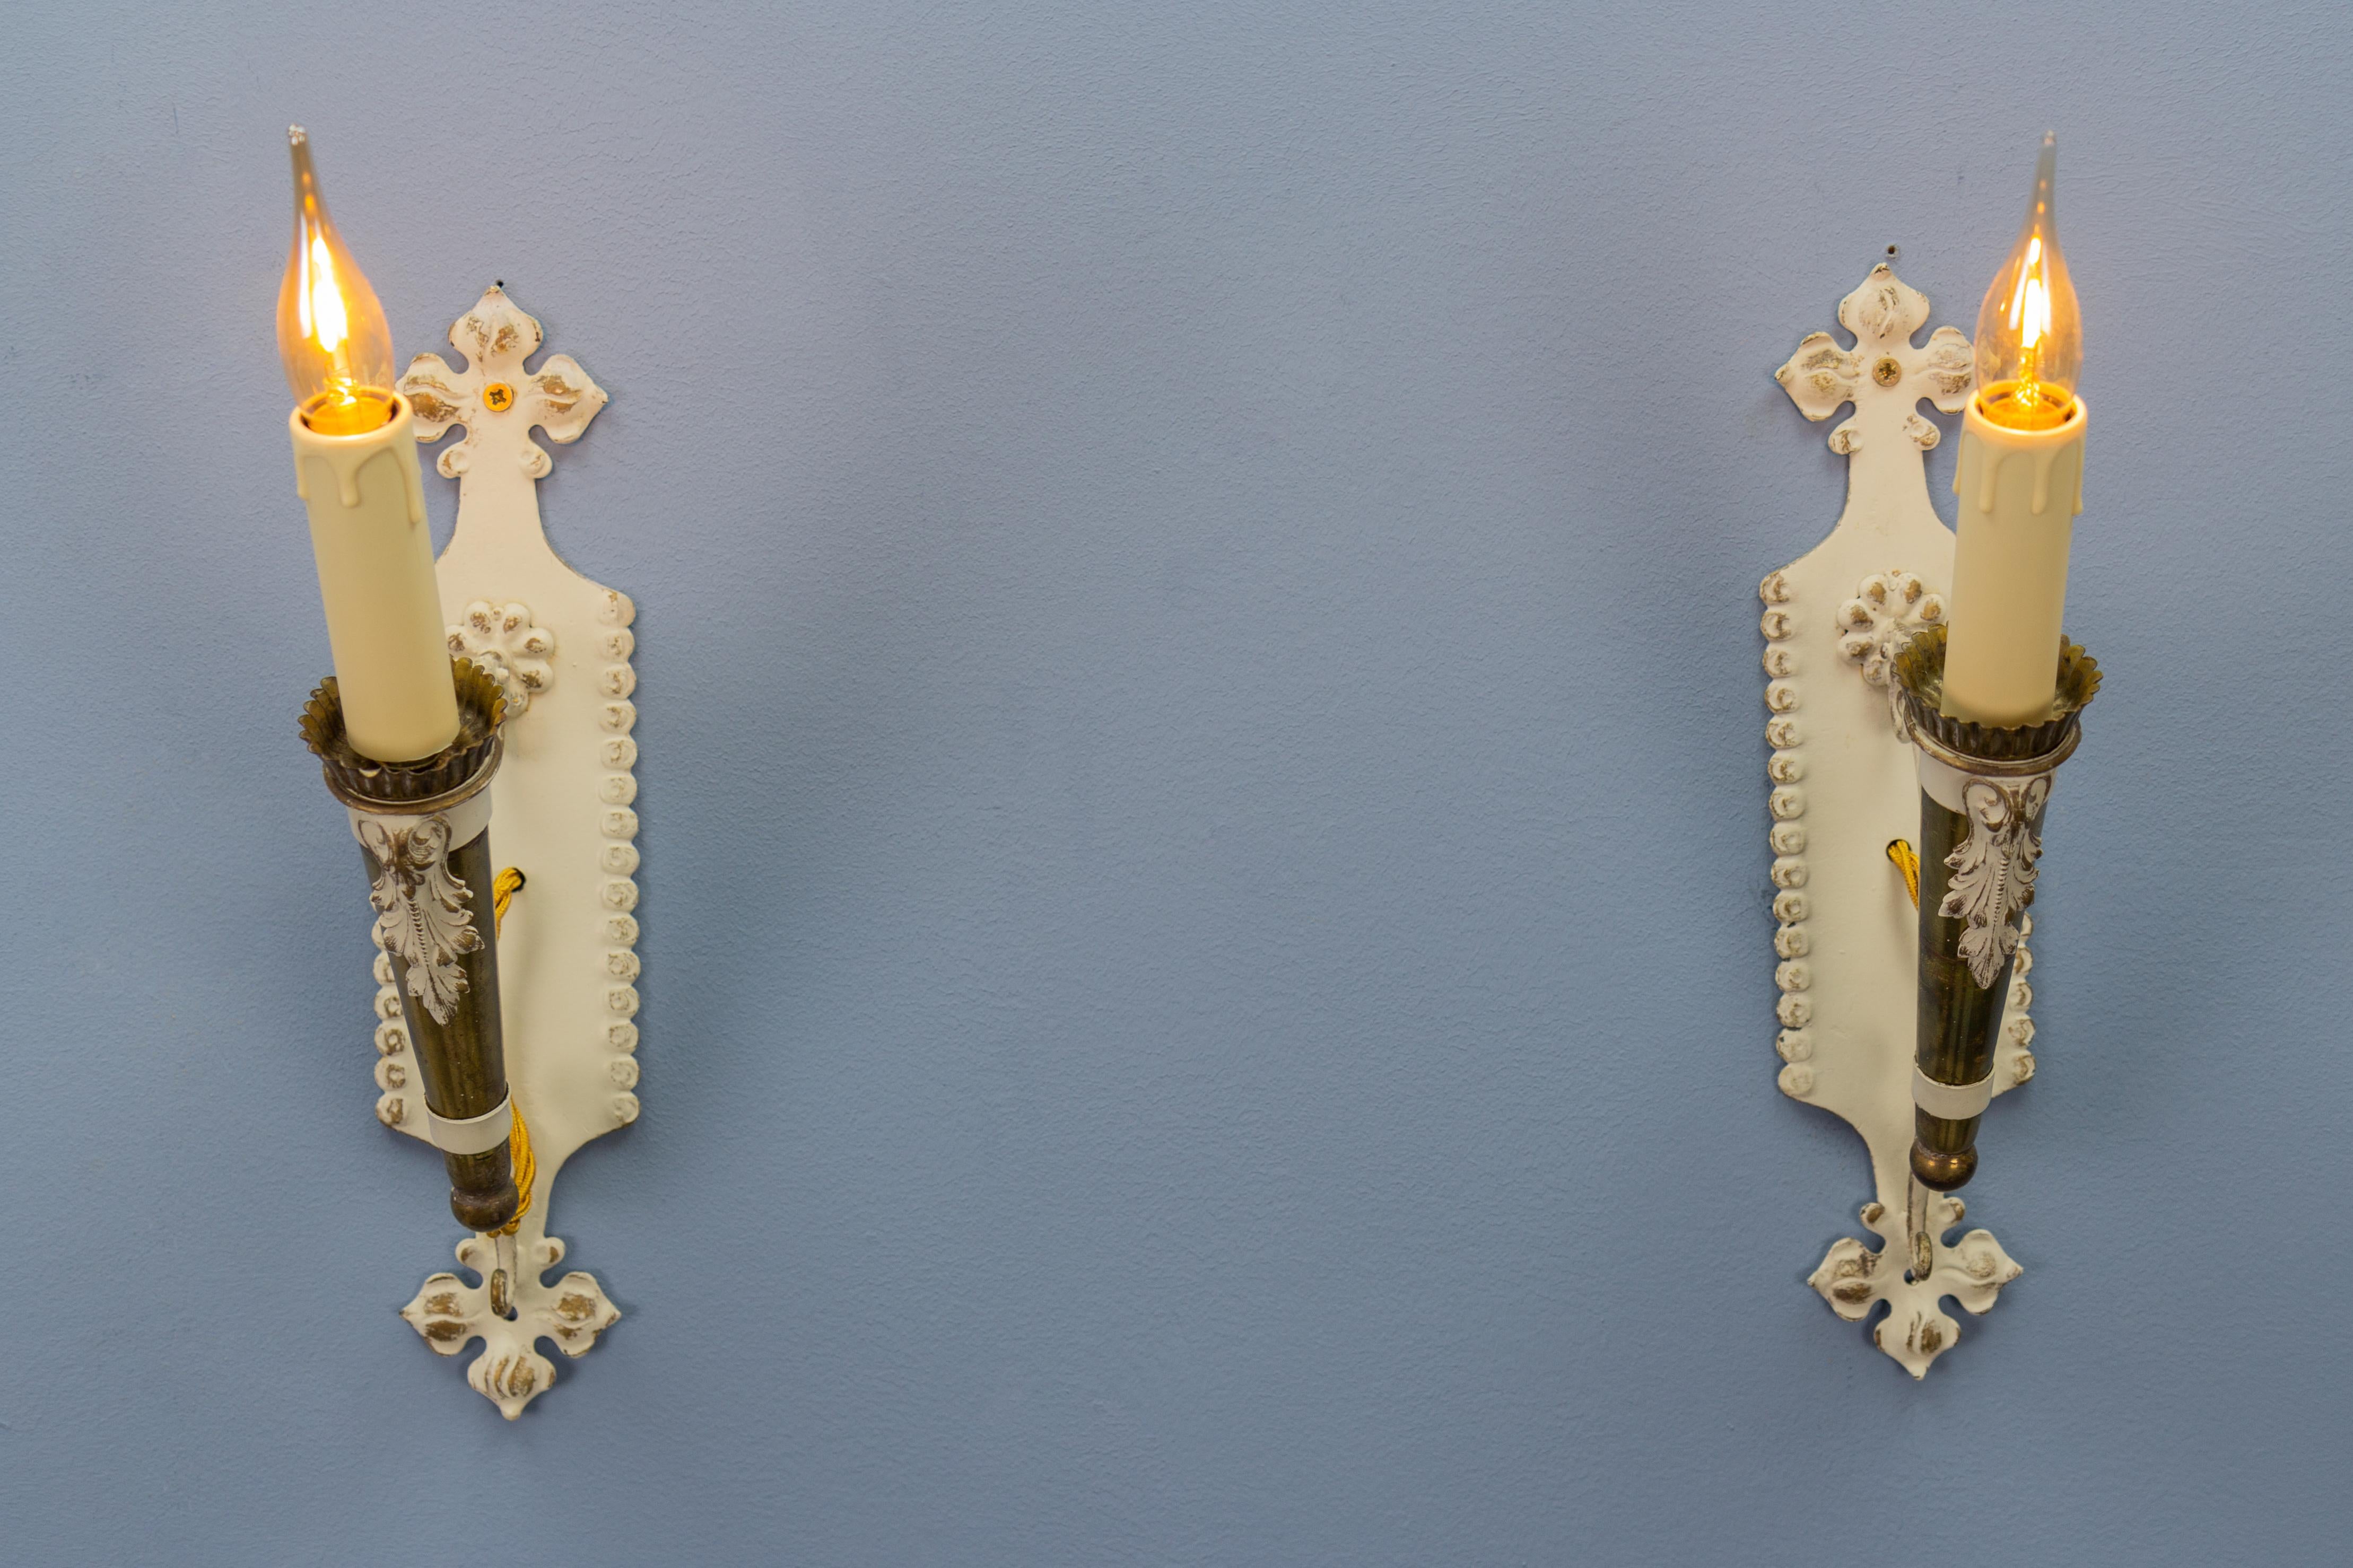 Paar italienische Vintage-Wandleuchten aus weißem und goldenem Metall in Fackelform, ca. 1950er Jahre.
Ein bezauberndes Paar italienischer einarmiger fackelförmiger Wandleuchten aus Metall, wunderschön weiß lackiert mit goldenen Akzenten und